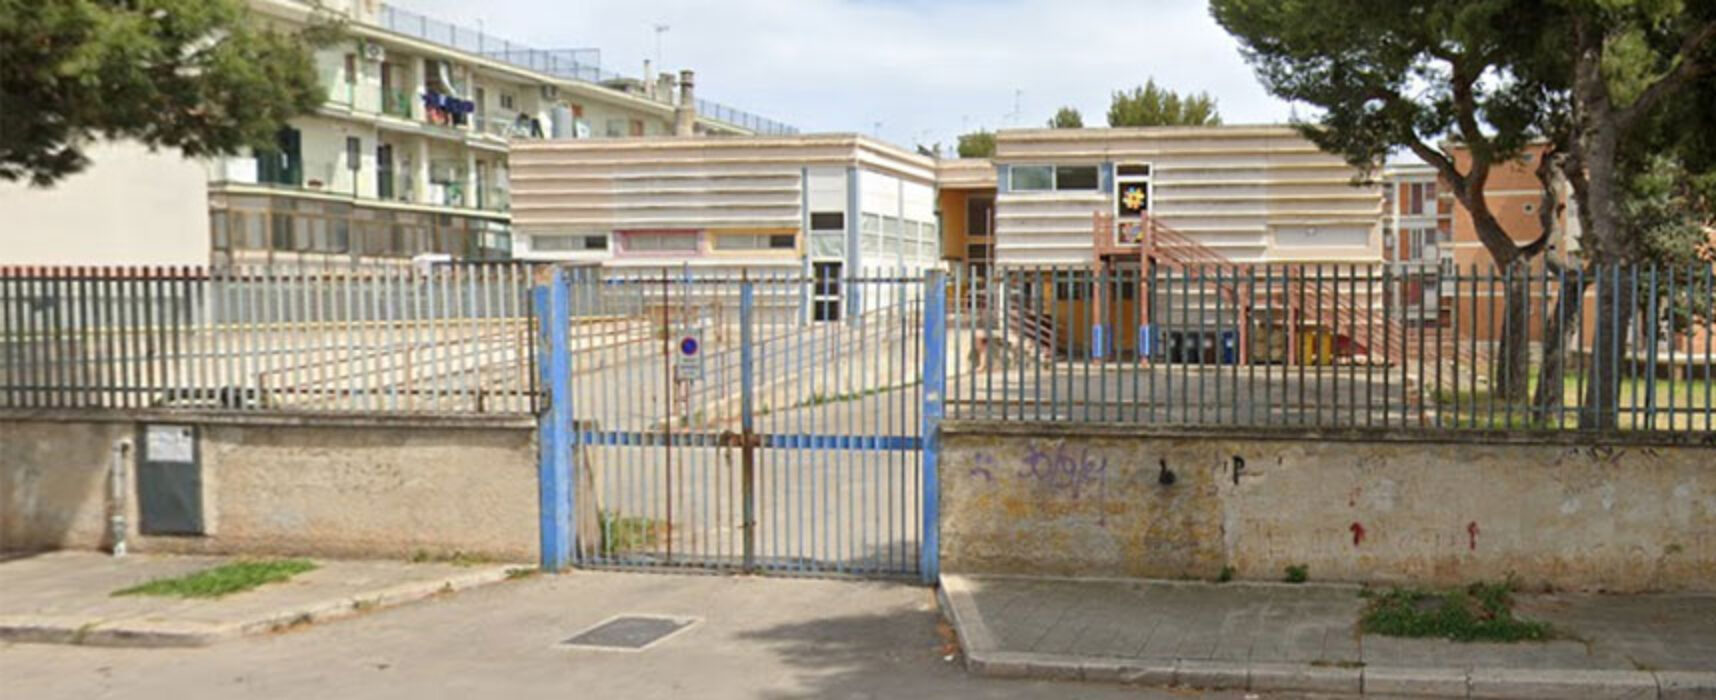 Finanziamento per scuola Carrara Gioia, Angarano: “Dimostrata capacità progettuale”